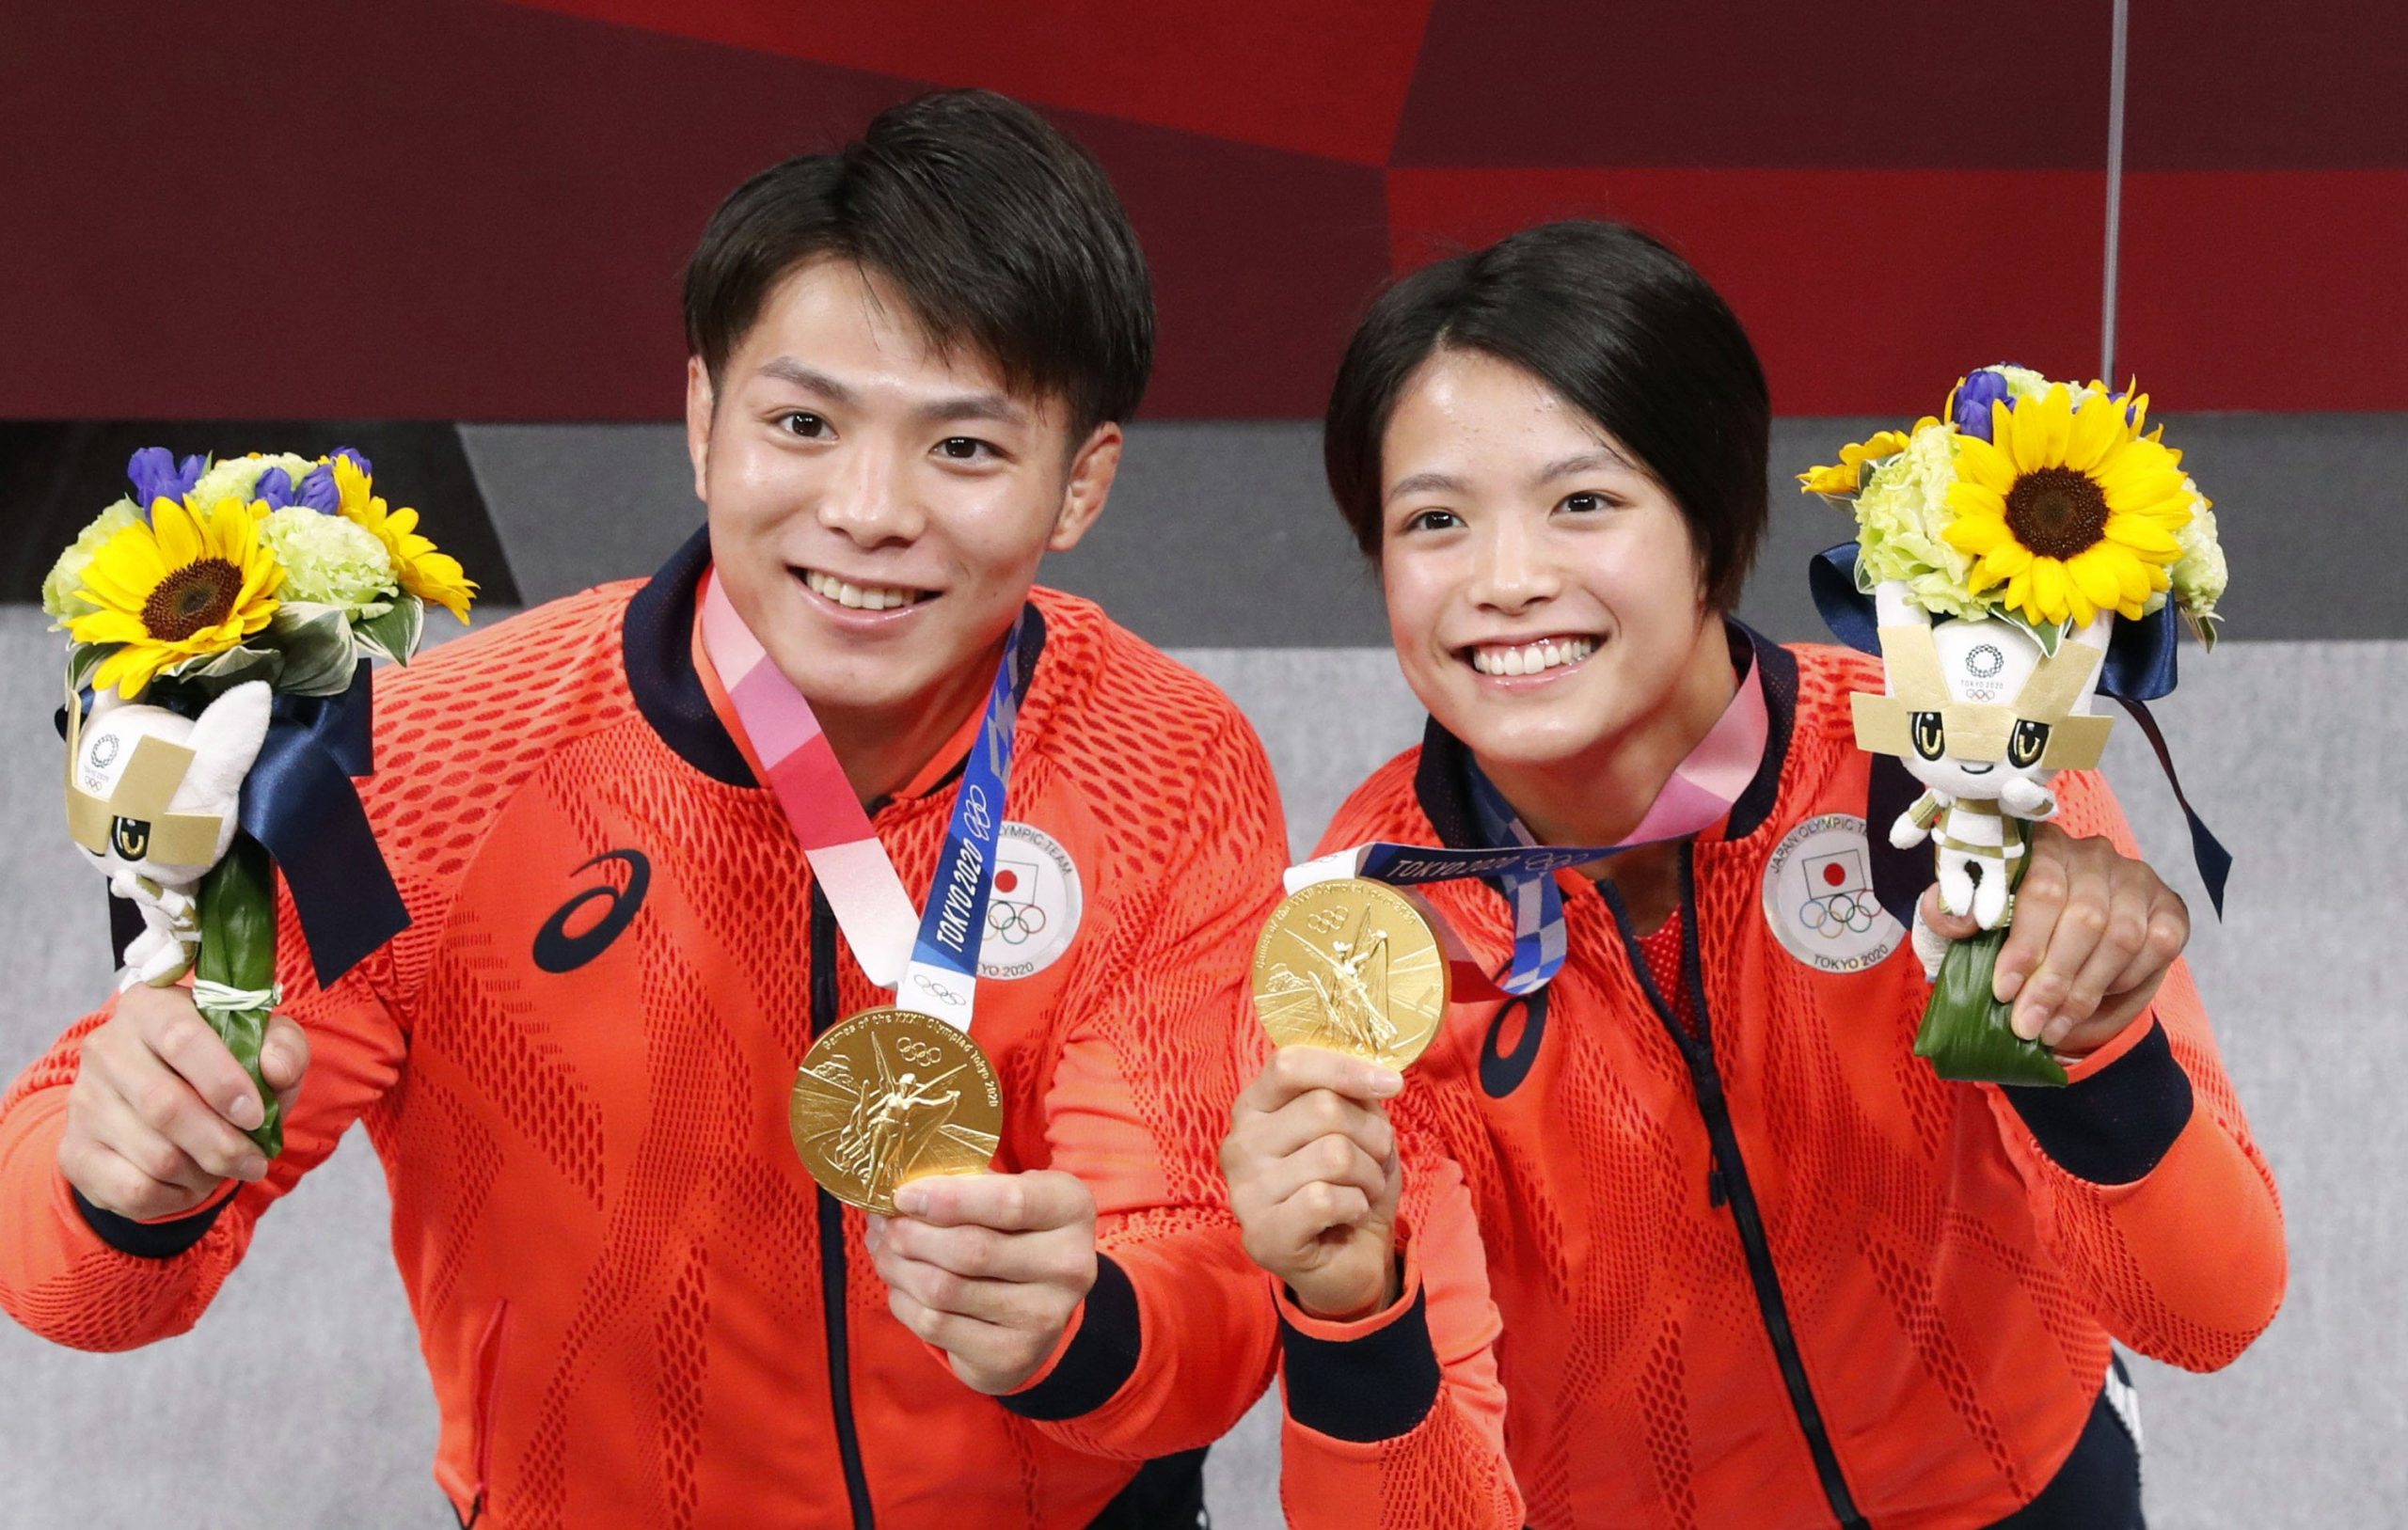 日本の兄弟がオリンピック柔道金メダルを目指す